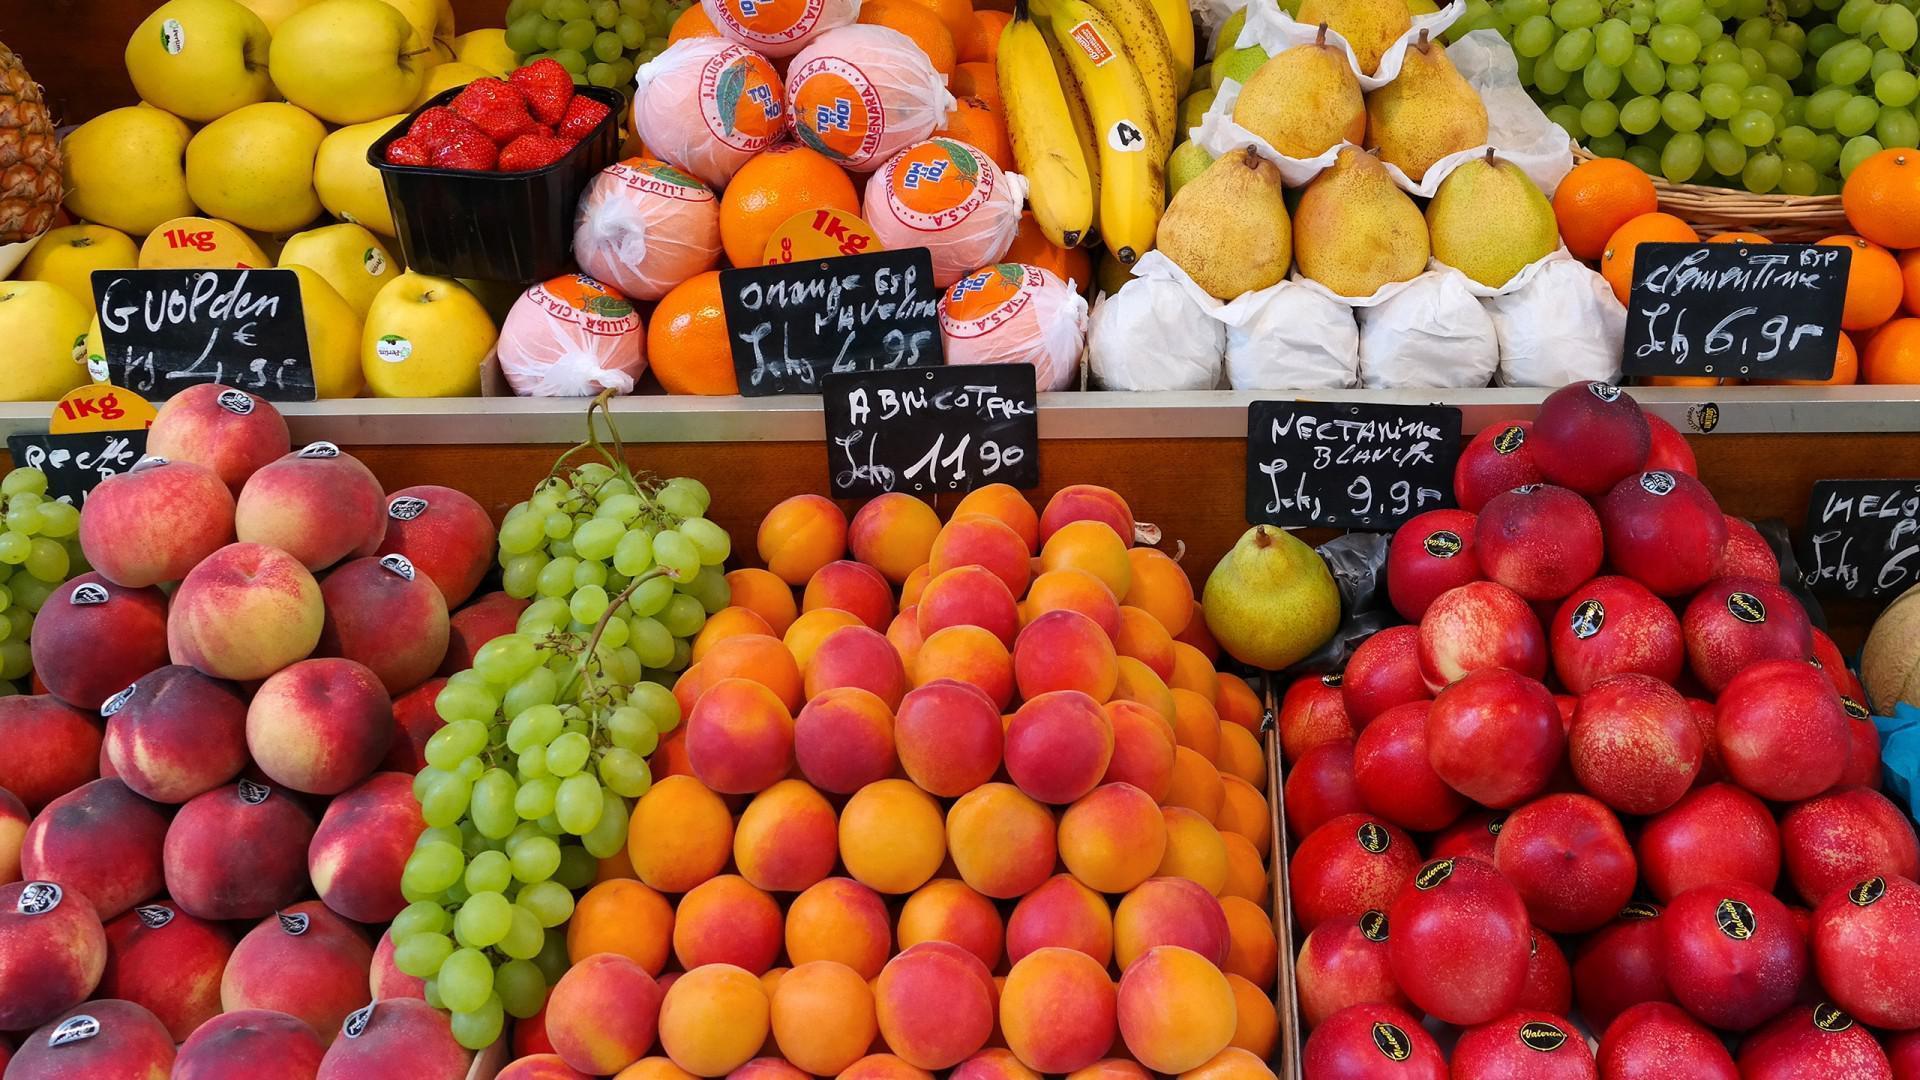 Fruit Encyclopedia, supermarkets, fruit, street markets, HD